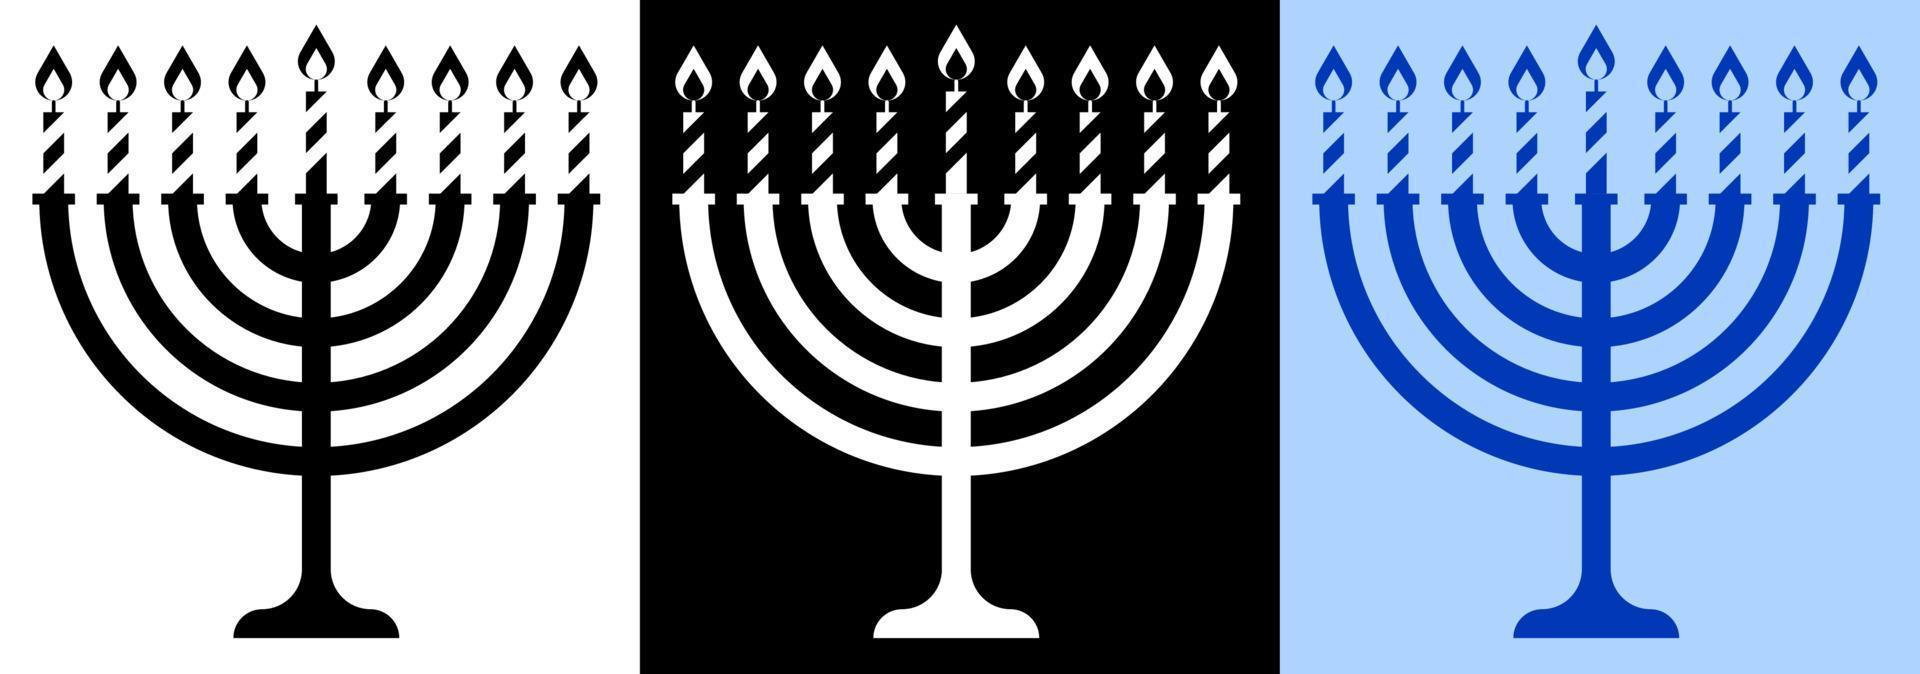 Menorah candle icon. Jewish holiday of Hanukkah. Holiday elements. Vector